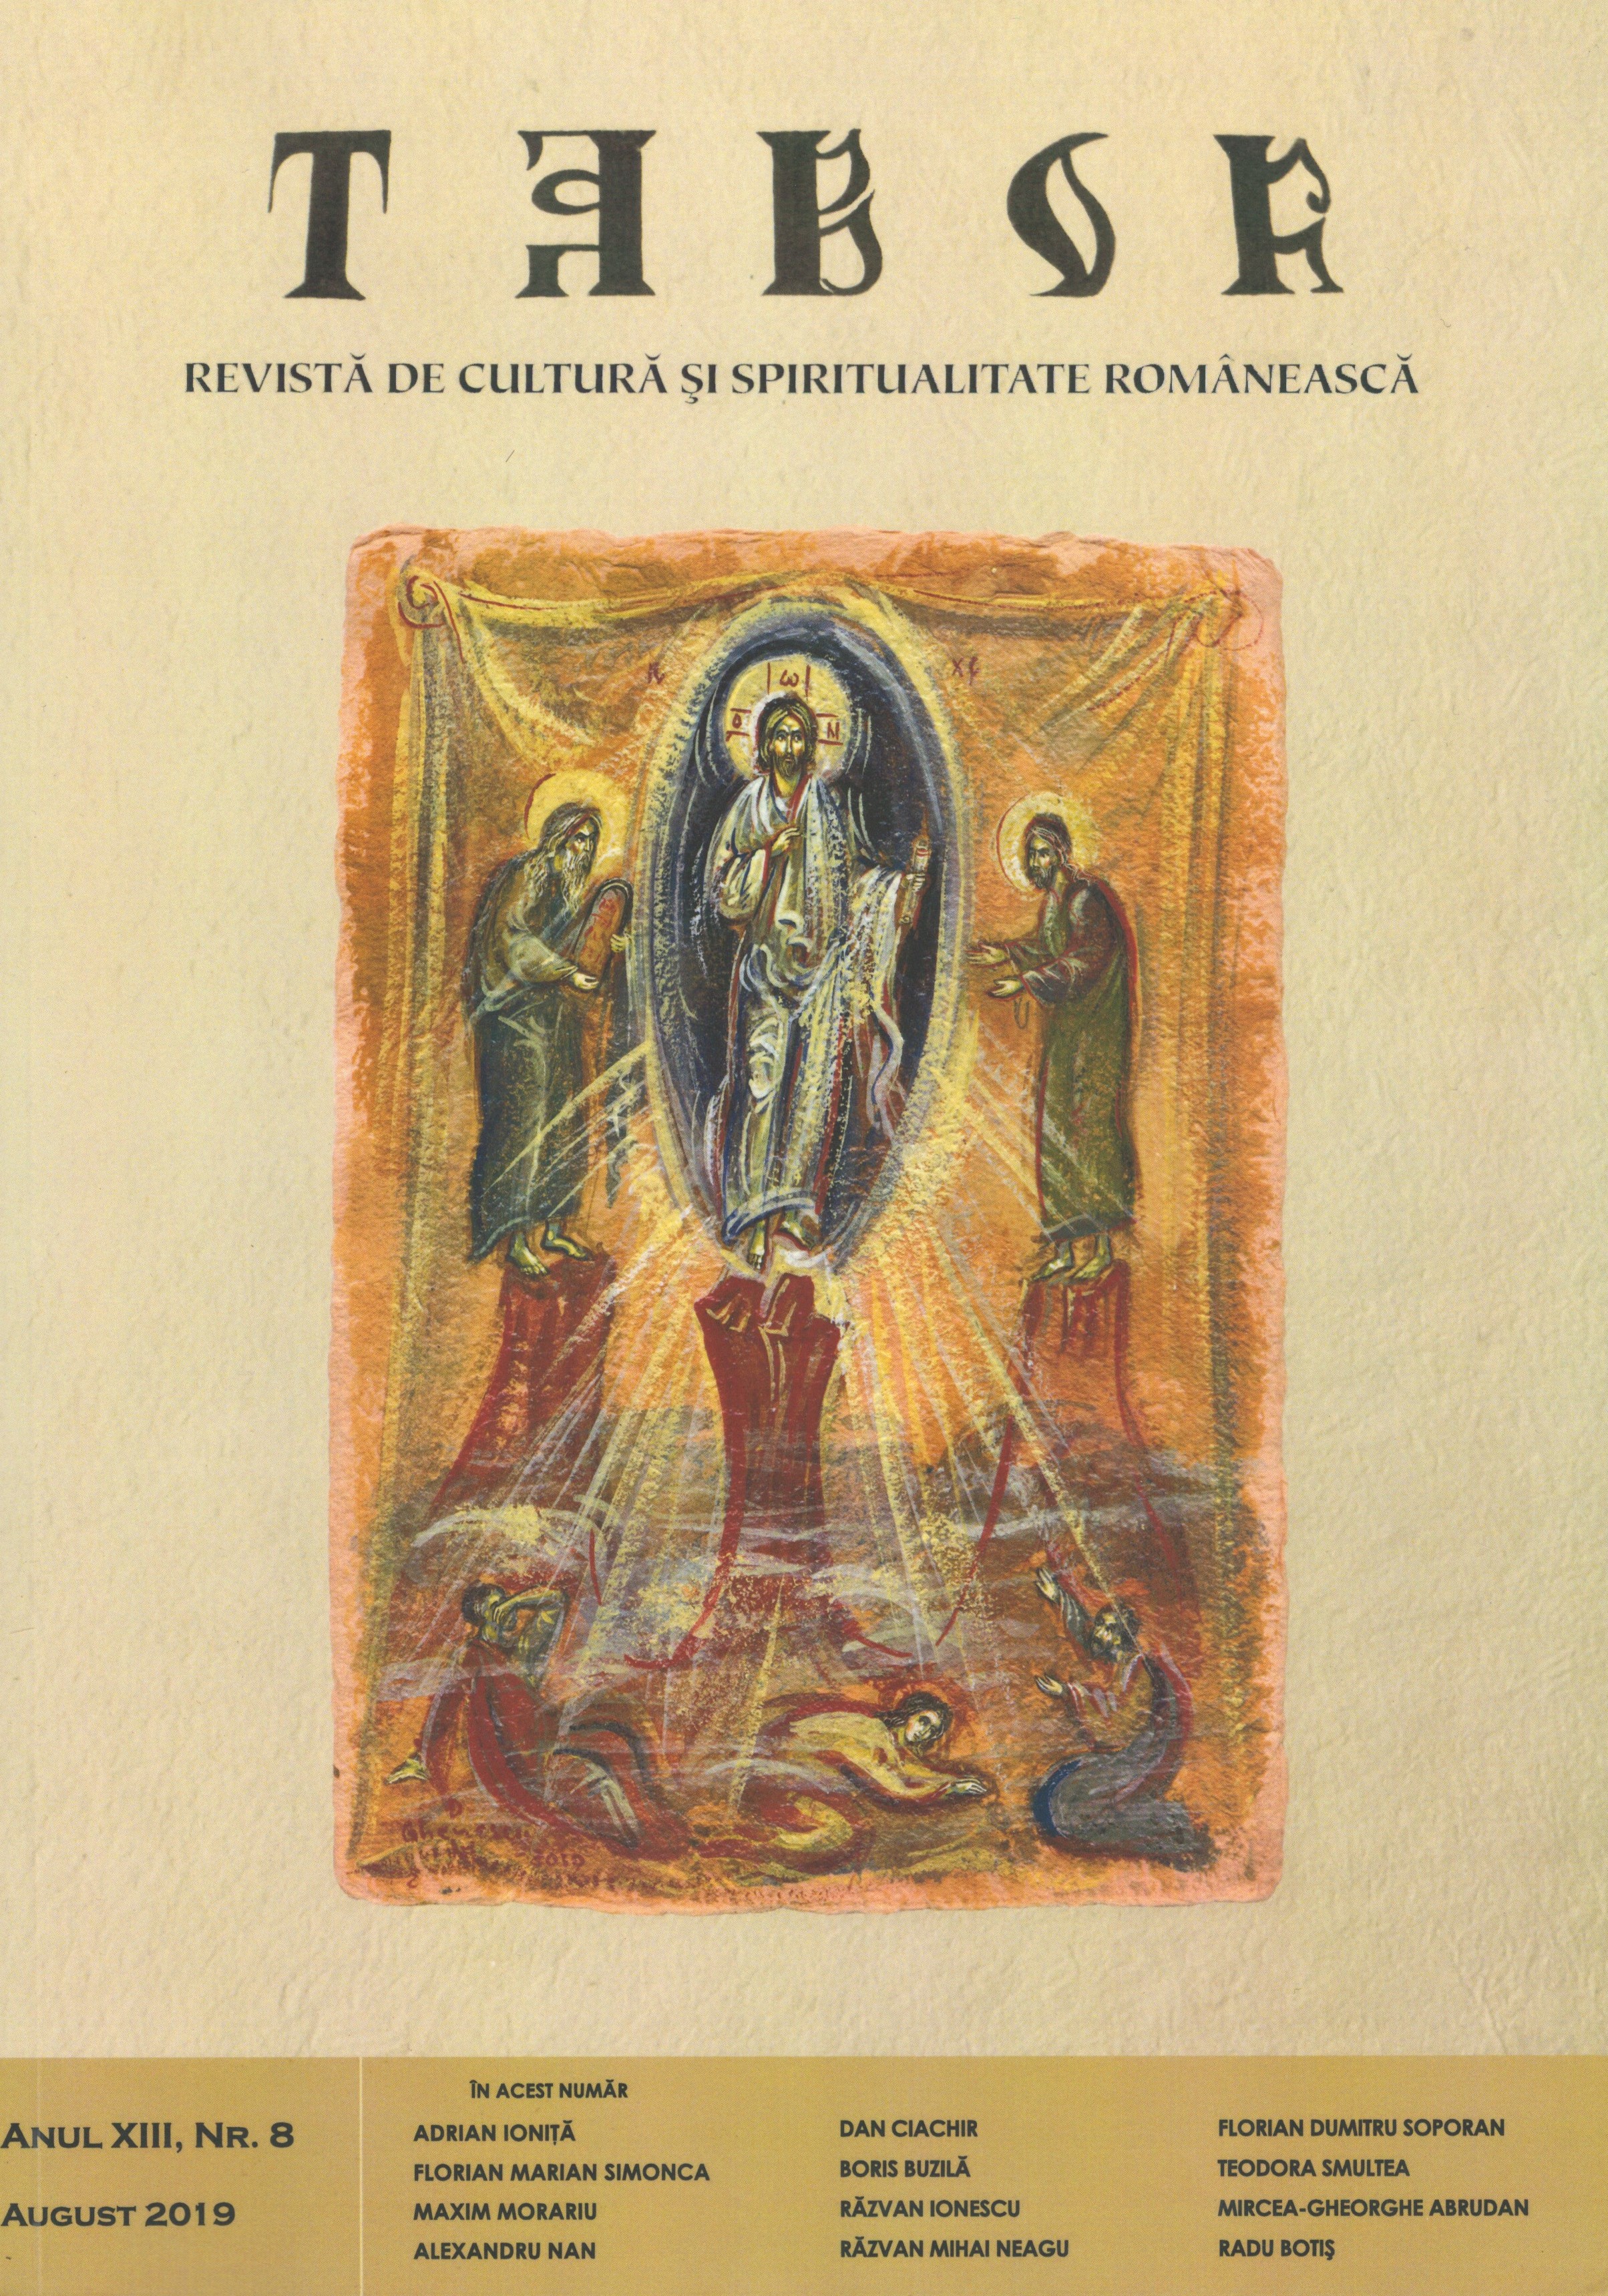 Creştinismul românesc din Ţara Sfântă şi rolul lui în promovarea valorilor româneşti